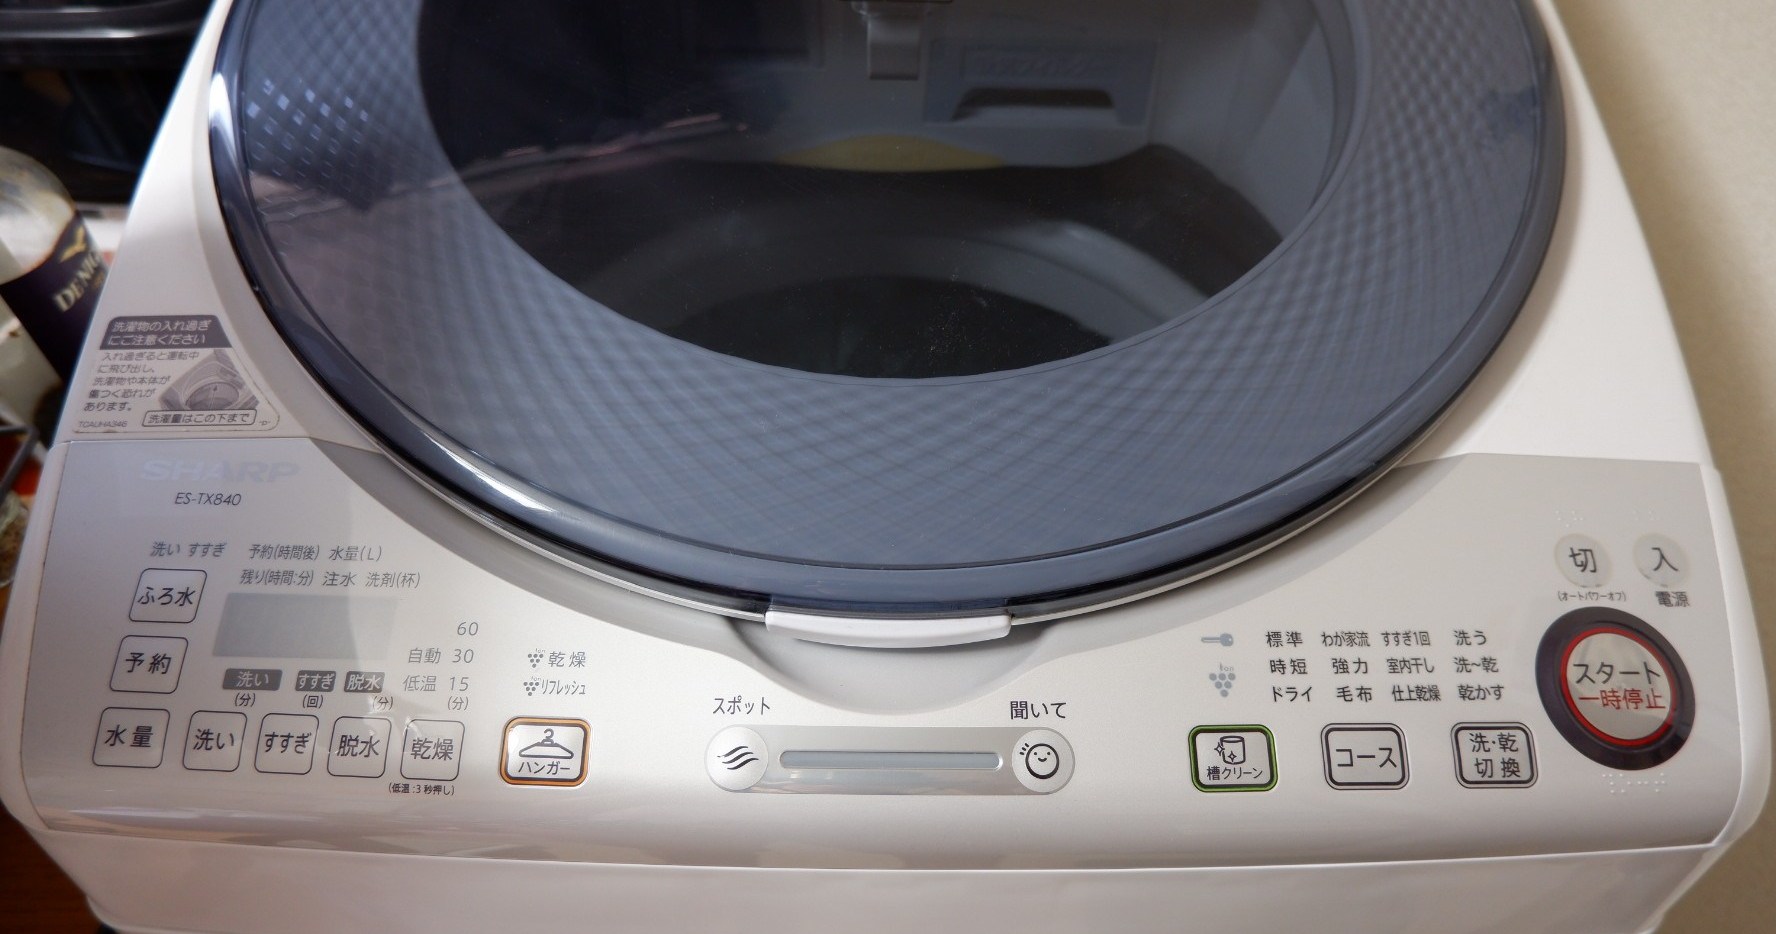 Trả lời cho tiết câu hỏi: Máy giặt nội địa Nhật có tốt không?